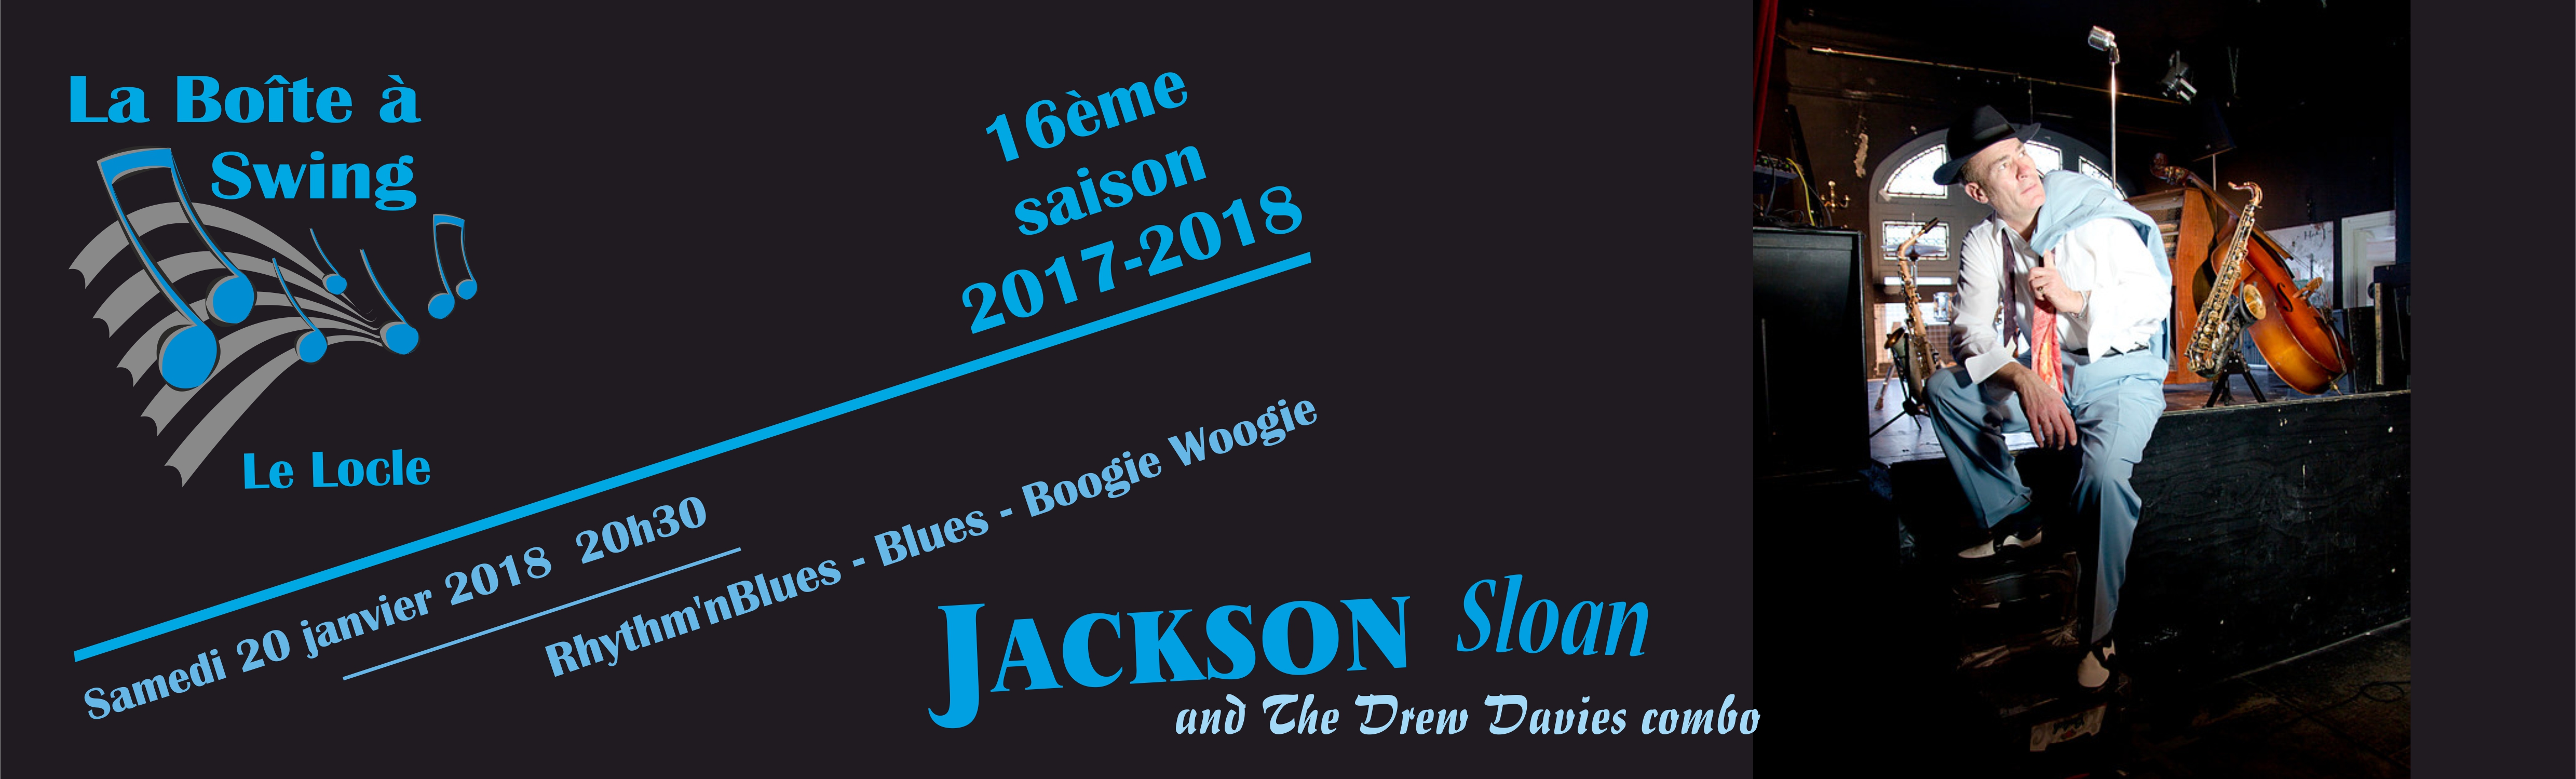 bandeau Jackson Sloan 20012018